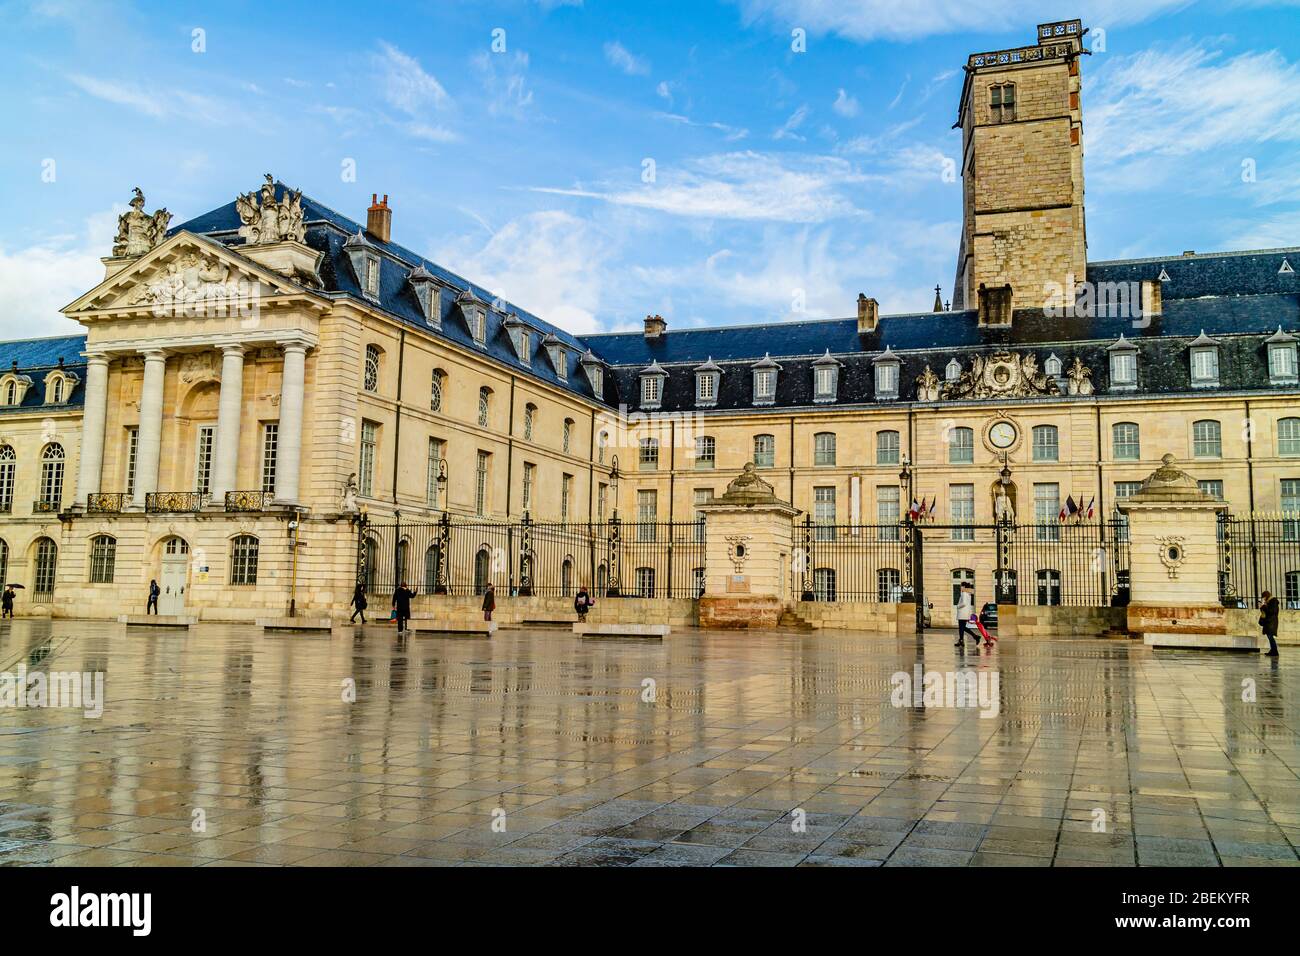 Palast der Herzöge, mit dem Turm von Philippe le Bon aus dem 15. Jahrhundert, vom Place de la Libération im Stadtzentrum von Dijon, Frankreich. Februar 2020. Stockfoto